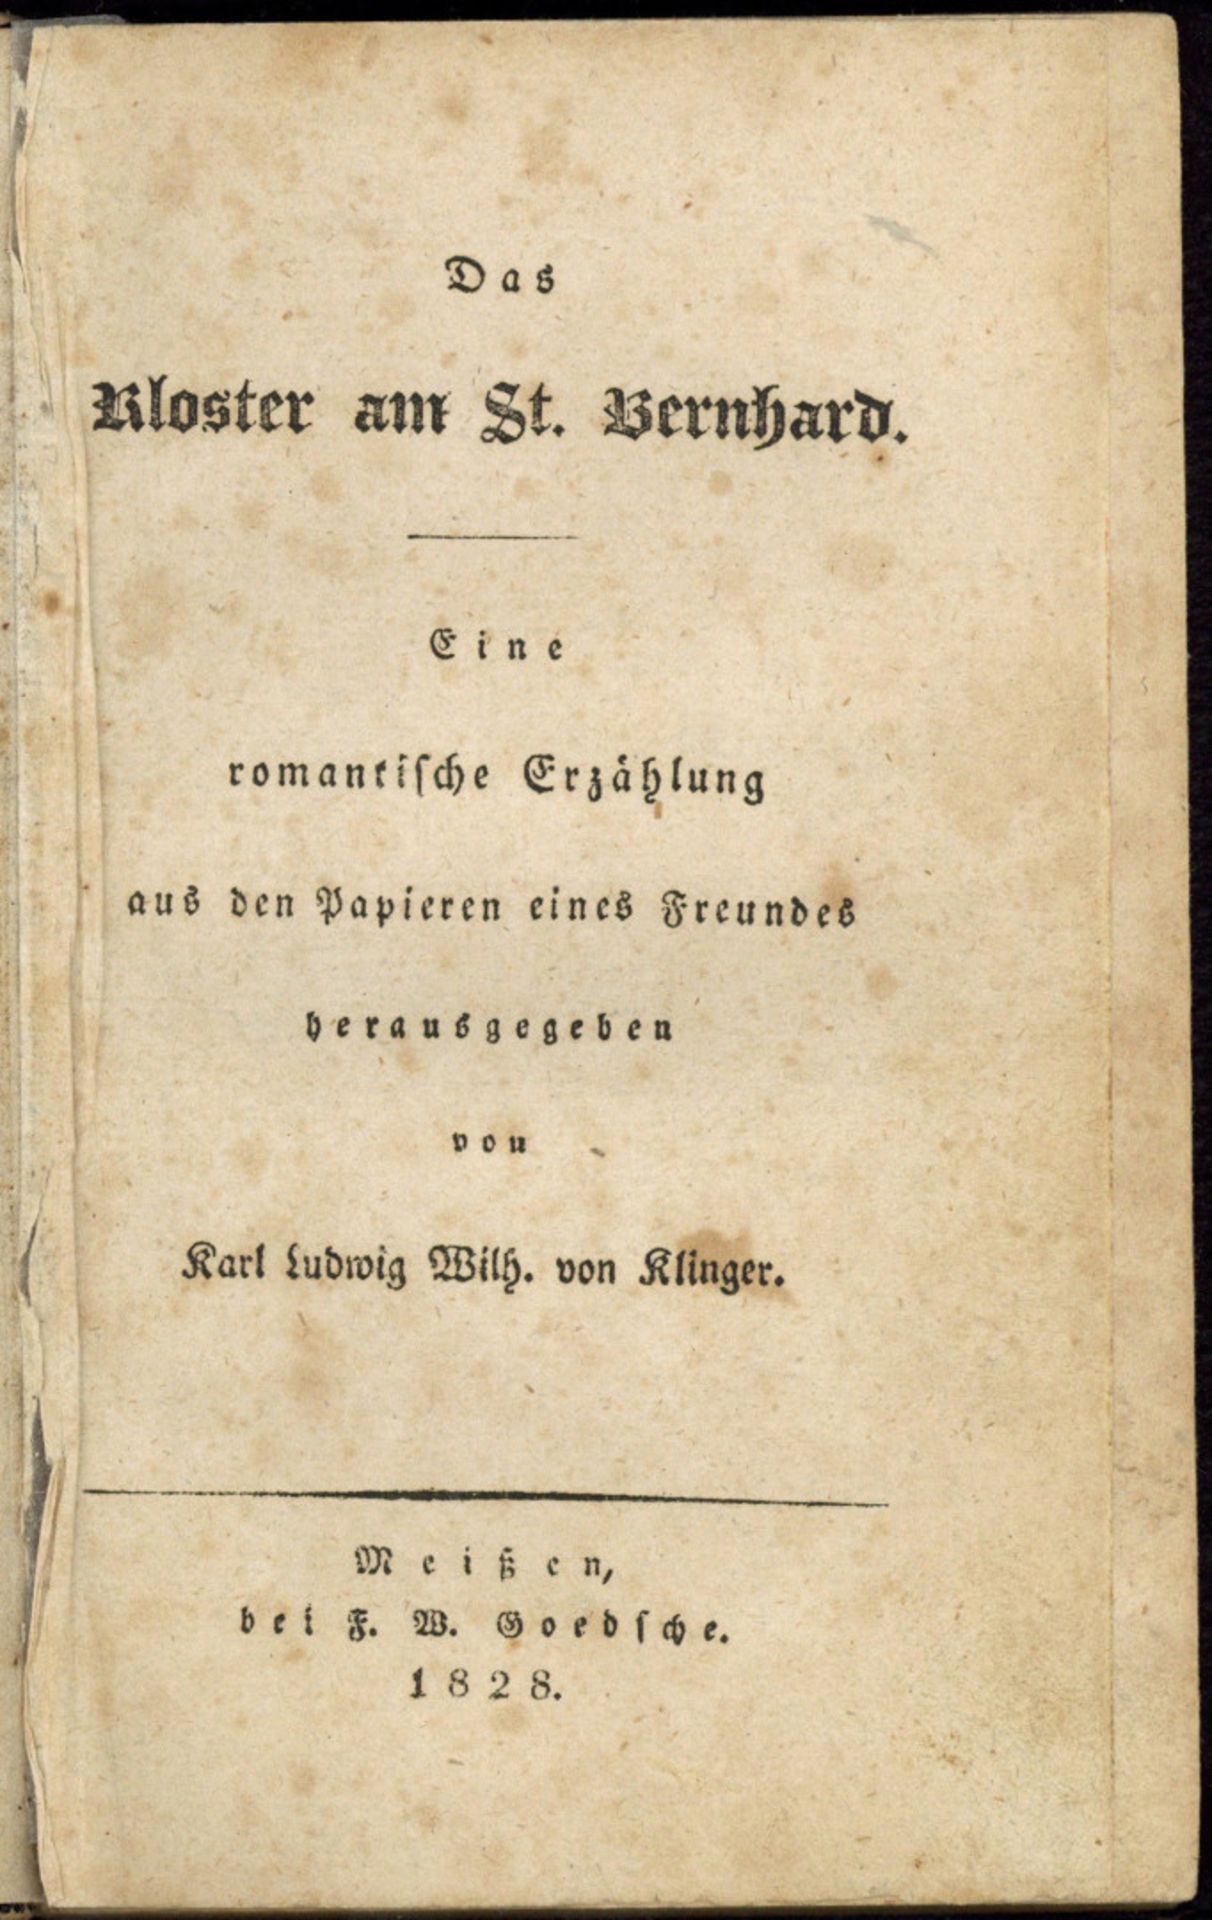 (Dräxler, Karl Ferdinand): Das Kloster am St. Bernhard.